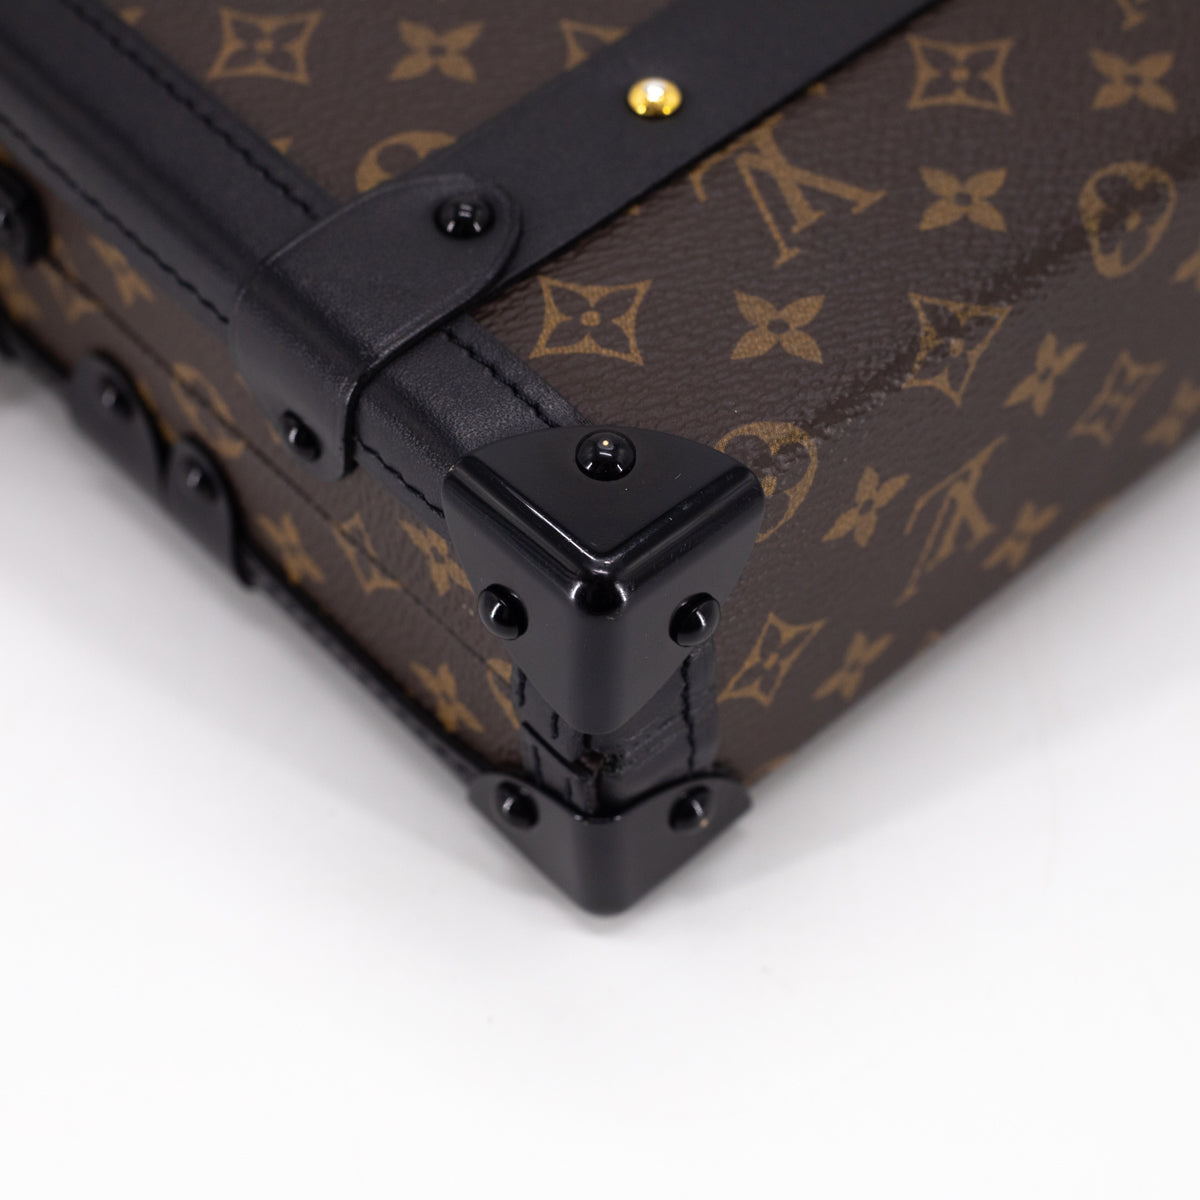 Louis Vuitton Malle Shoulder bag 389465, UhfmrShops